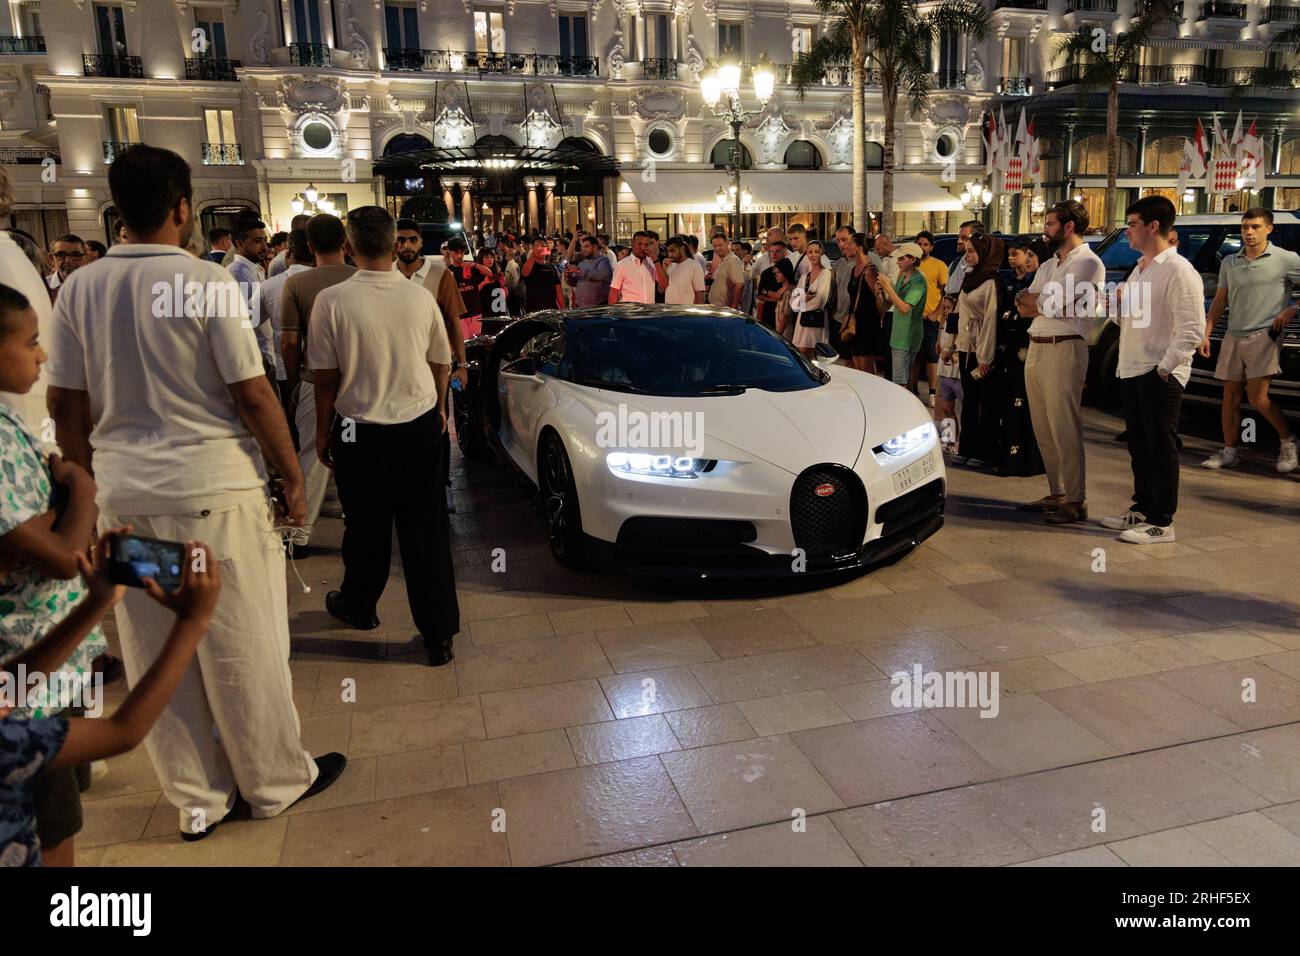 Bugatti Chiron driving into Casino Square in Monte Carlo, Monaco Stock Photo